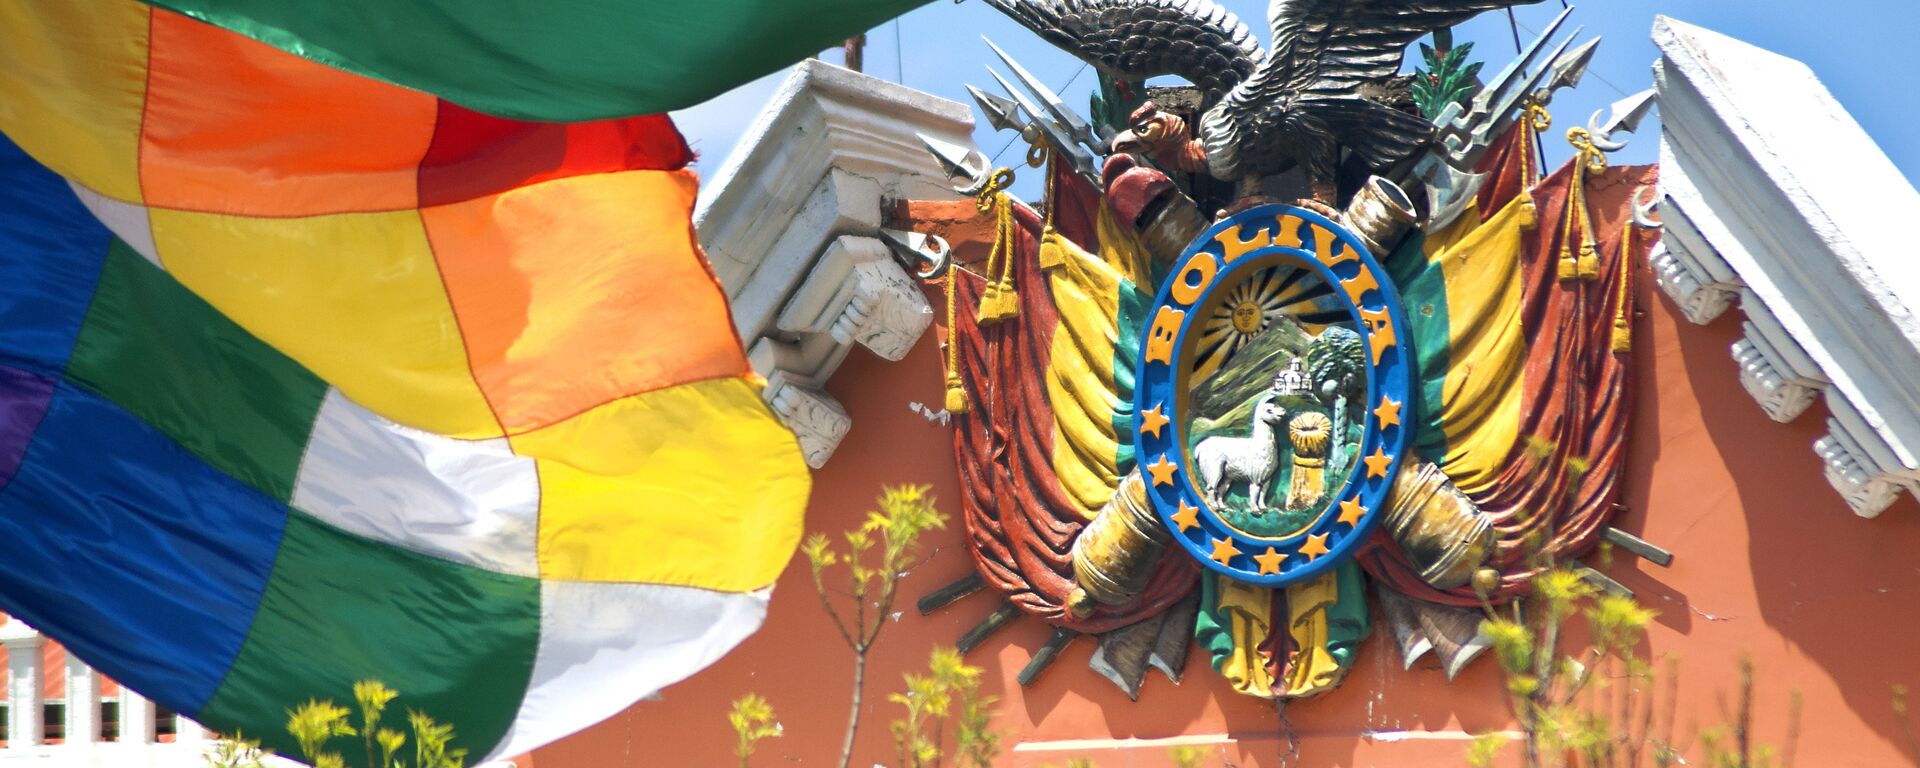 Escudo de Bolivia en el Palacio de Gobierno - Sputnik Mundo, 1920, 06.03.2021